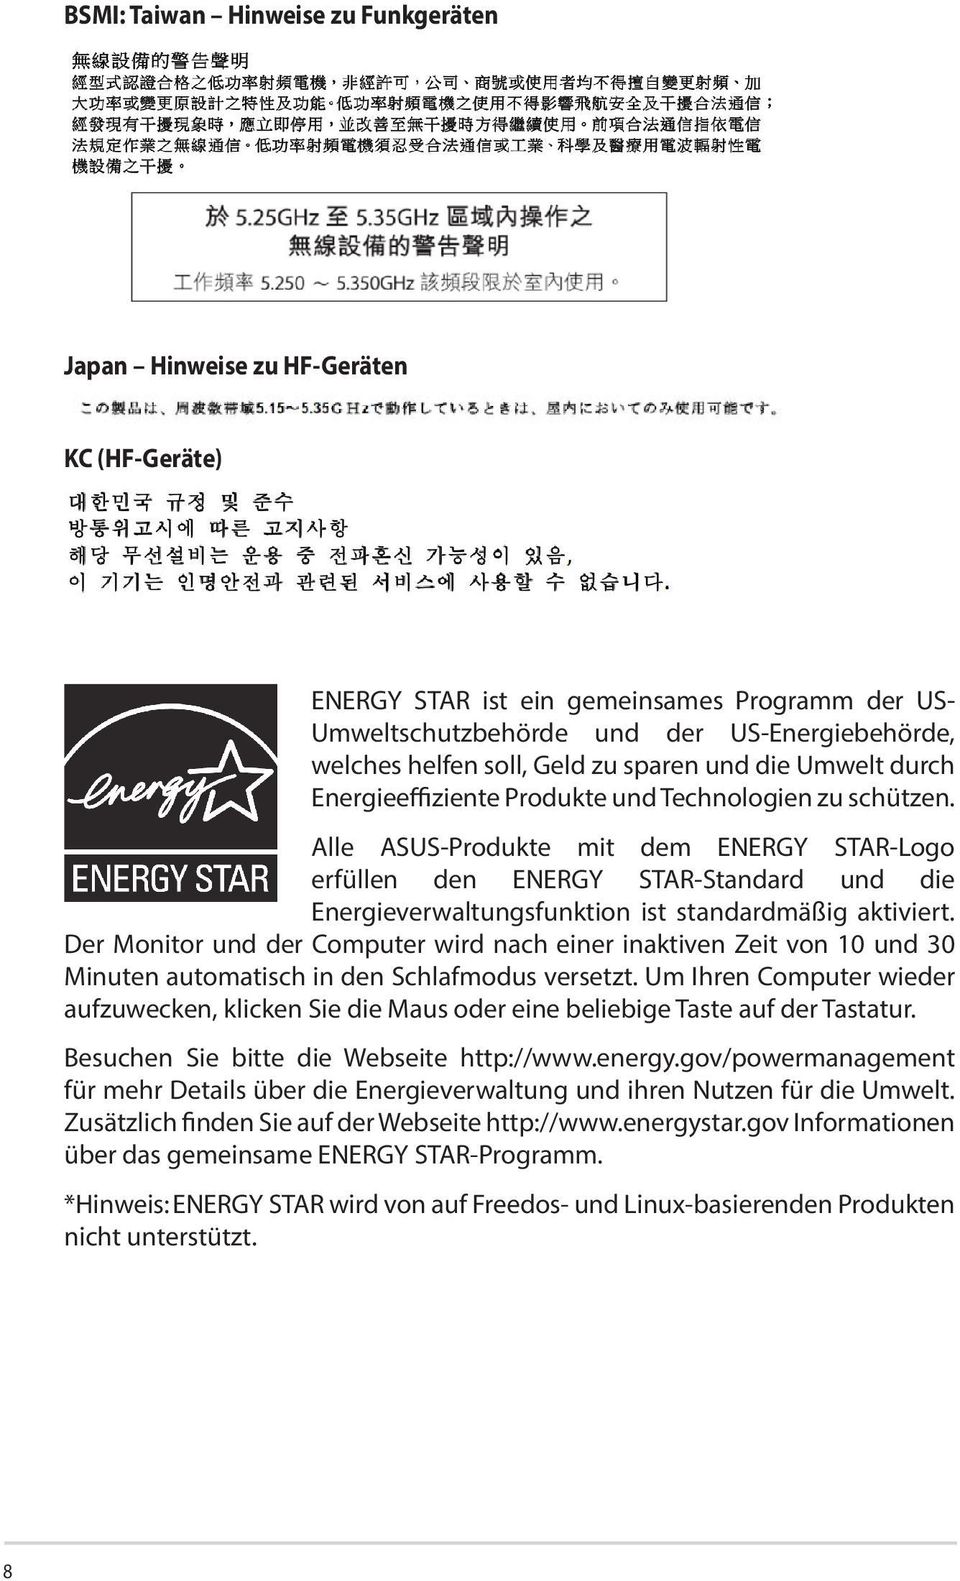 Alle ASUS-Produkte mit dem ENERGY STAR-Logo erfüllen den ENERGY STAR-Standard und die Energieverwaltungsfunktion ist standardmäßig aktiviert.